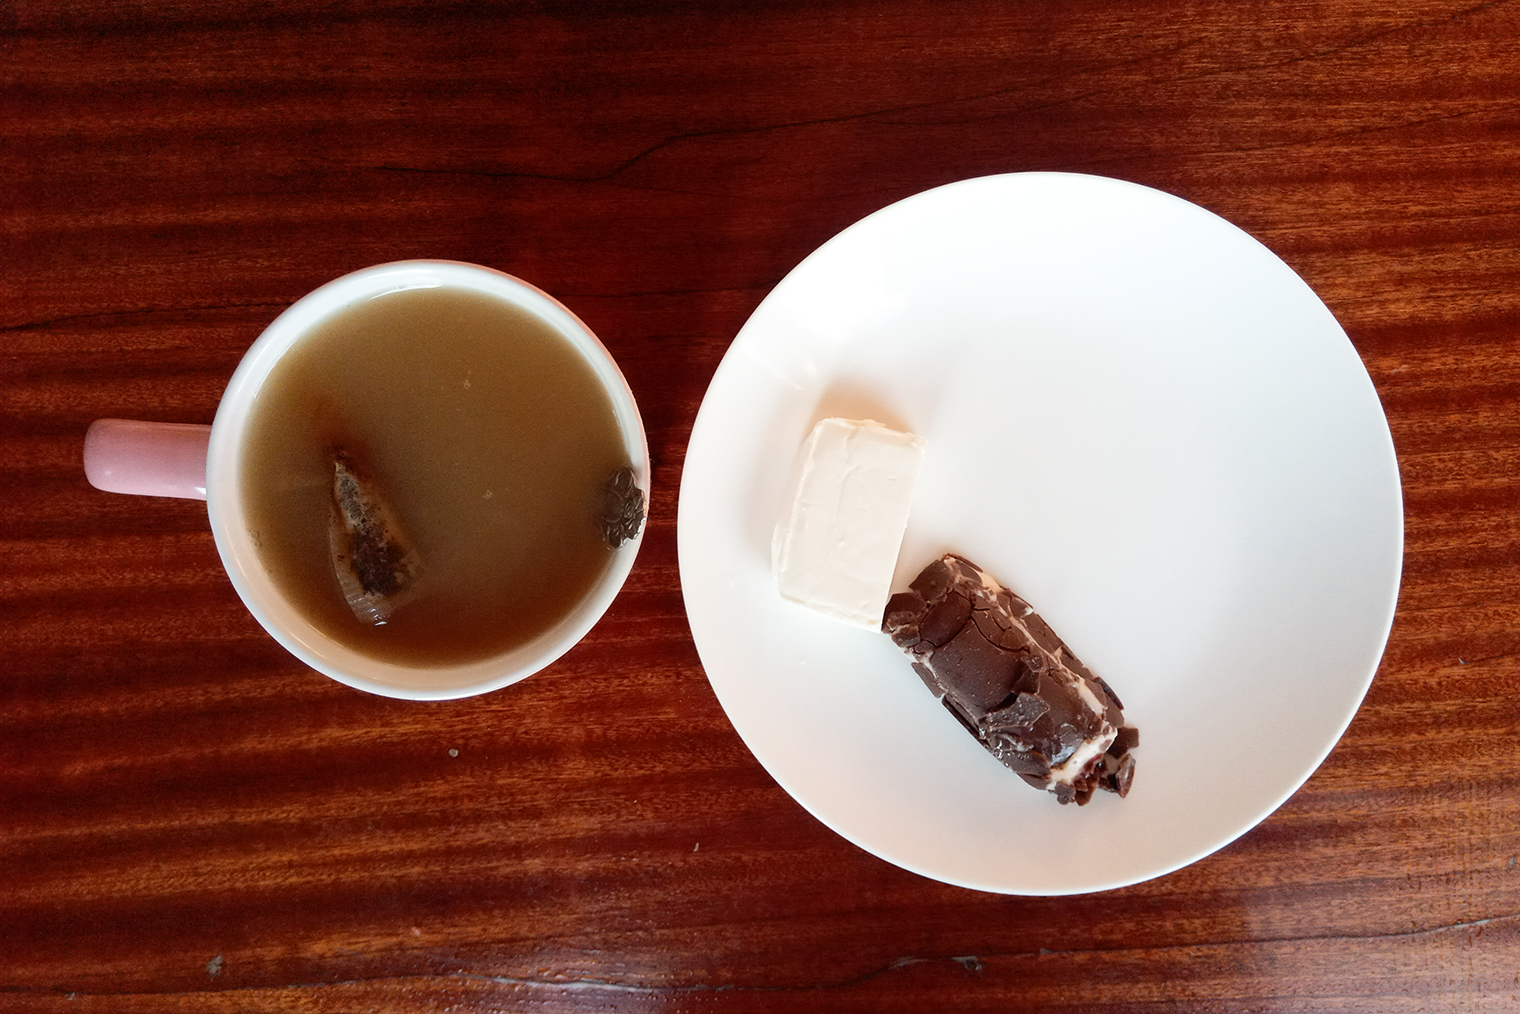 Мои перекусы: чай со сгущенкой, кусочек сырка «Дружба» и глазированный сырок